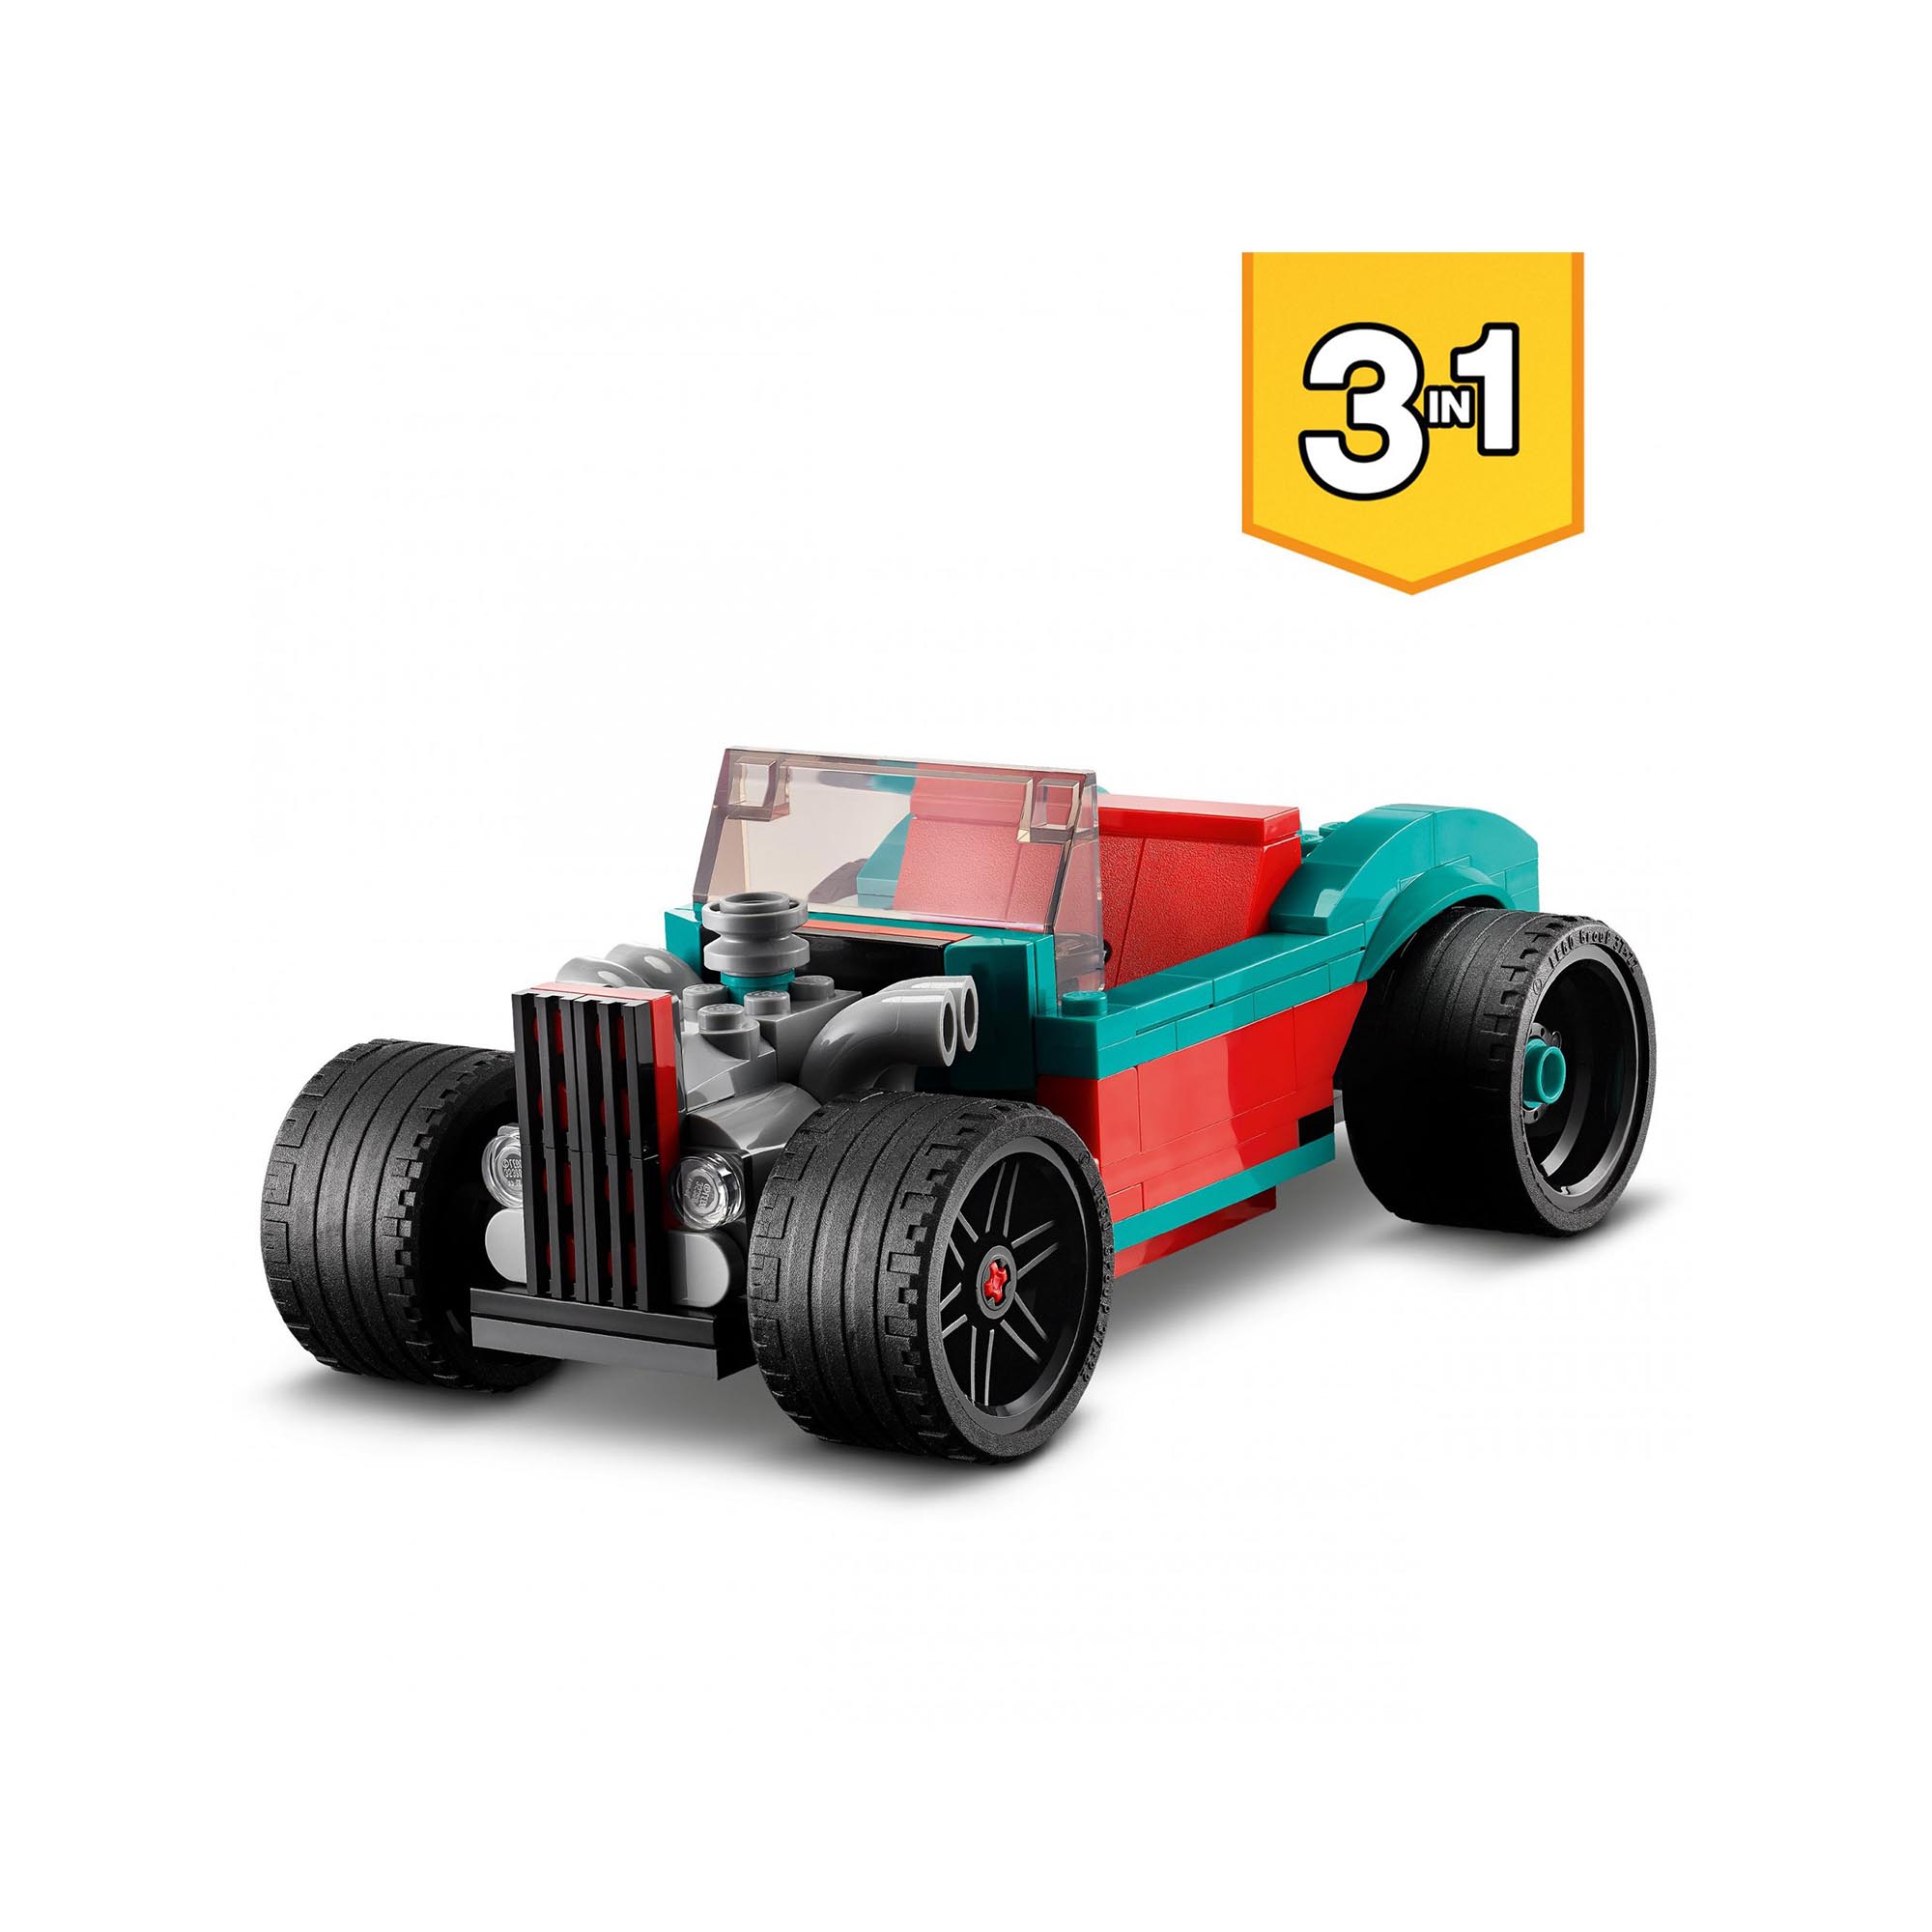 LEGO 31127 Creator 3in1 Street Racer, Macchine Giocattolo, Auto da Corsa, Giochi 31127, , large